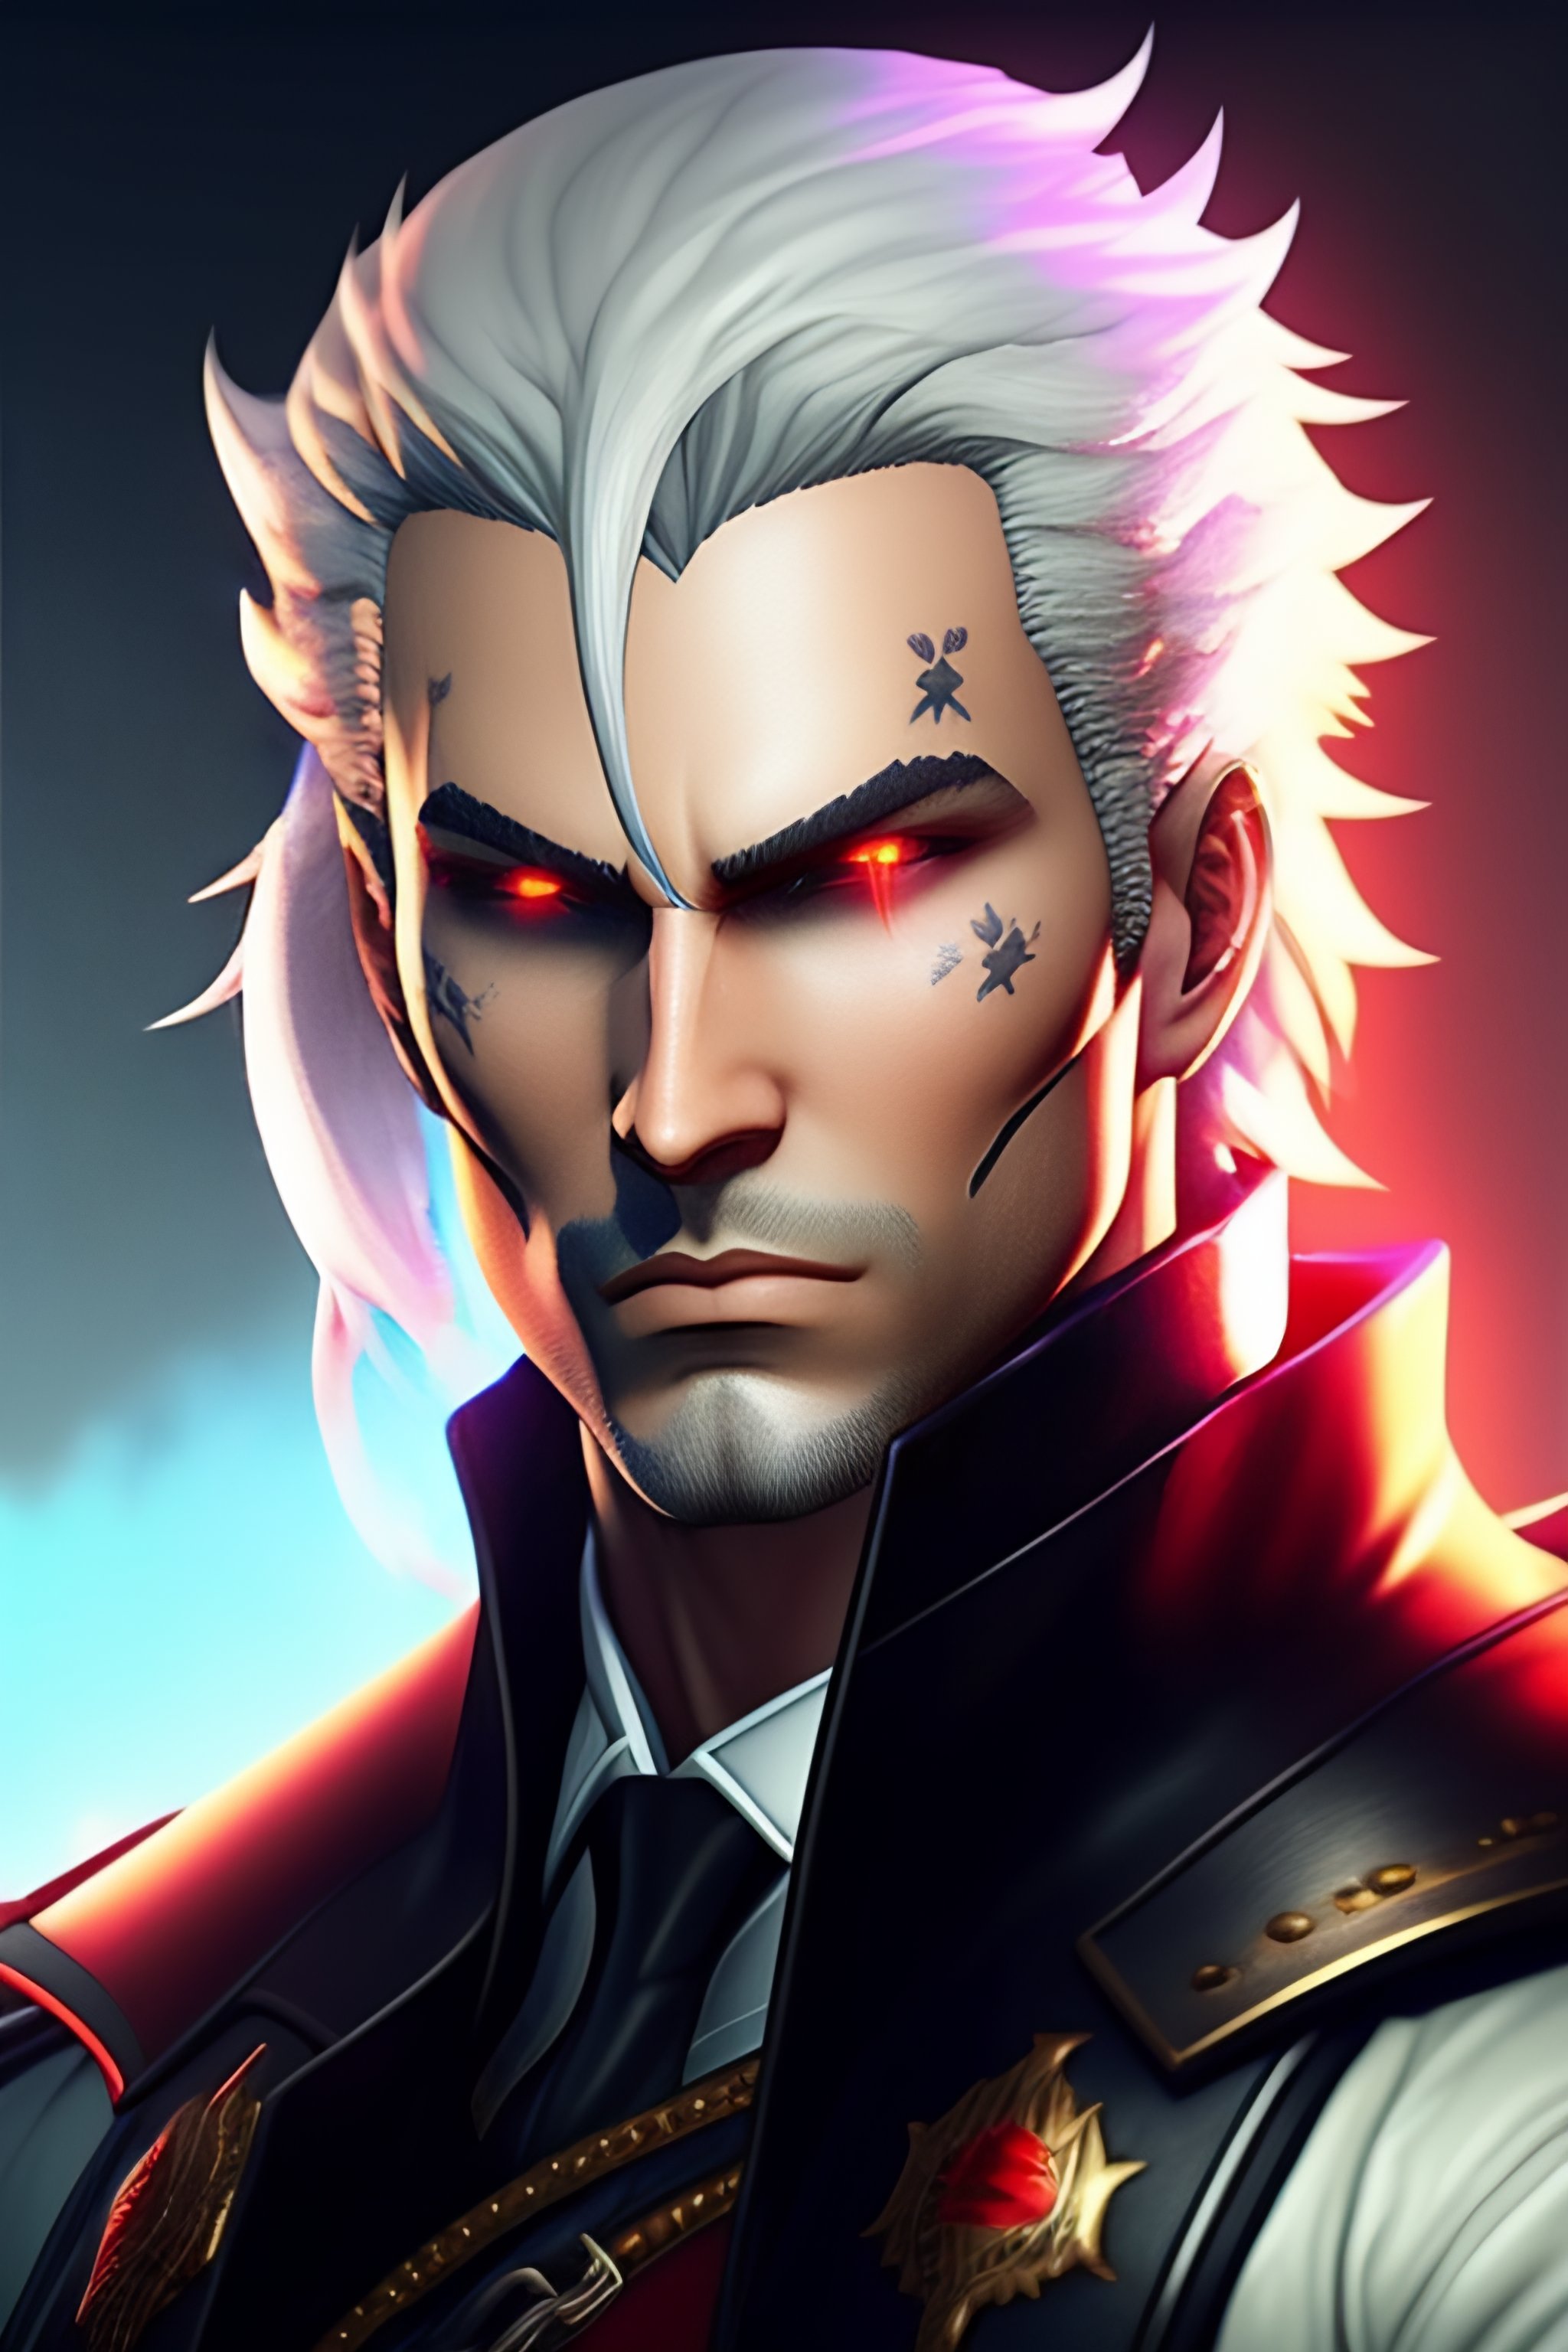 Lexica - Geralt of rivia as a phantom thief, Persona 5 style